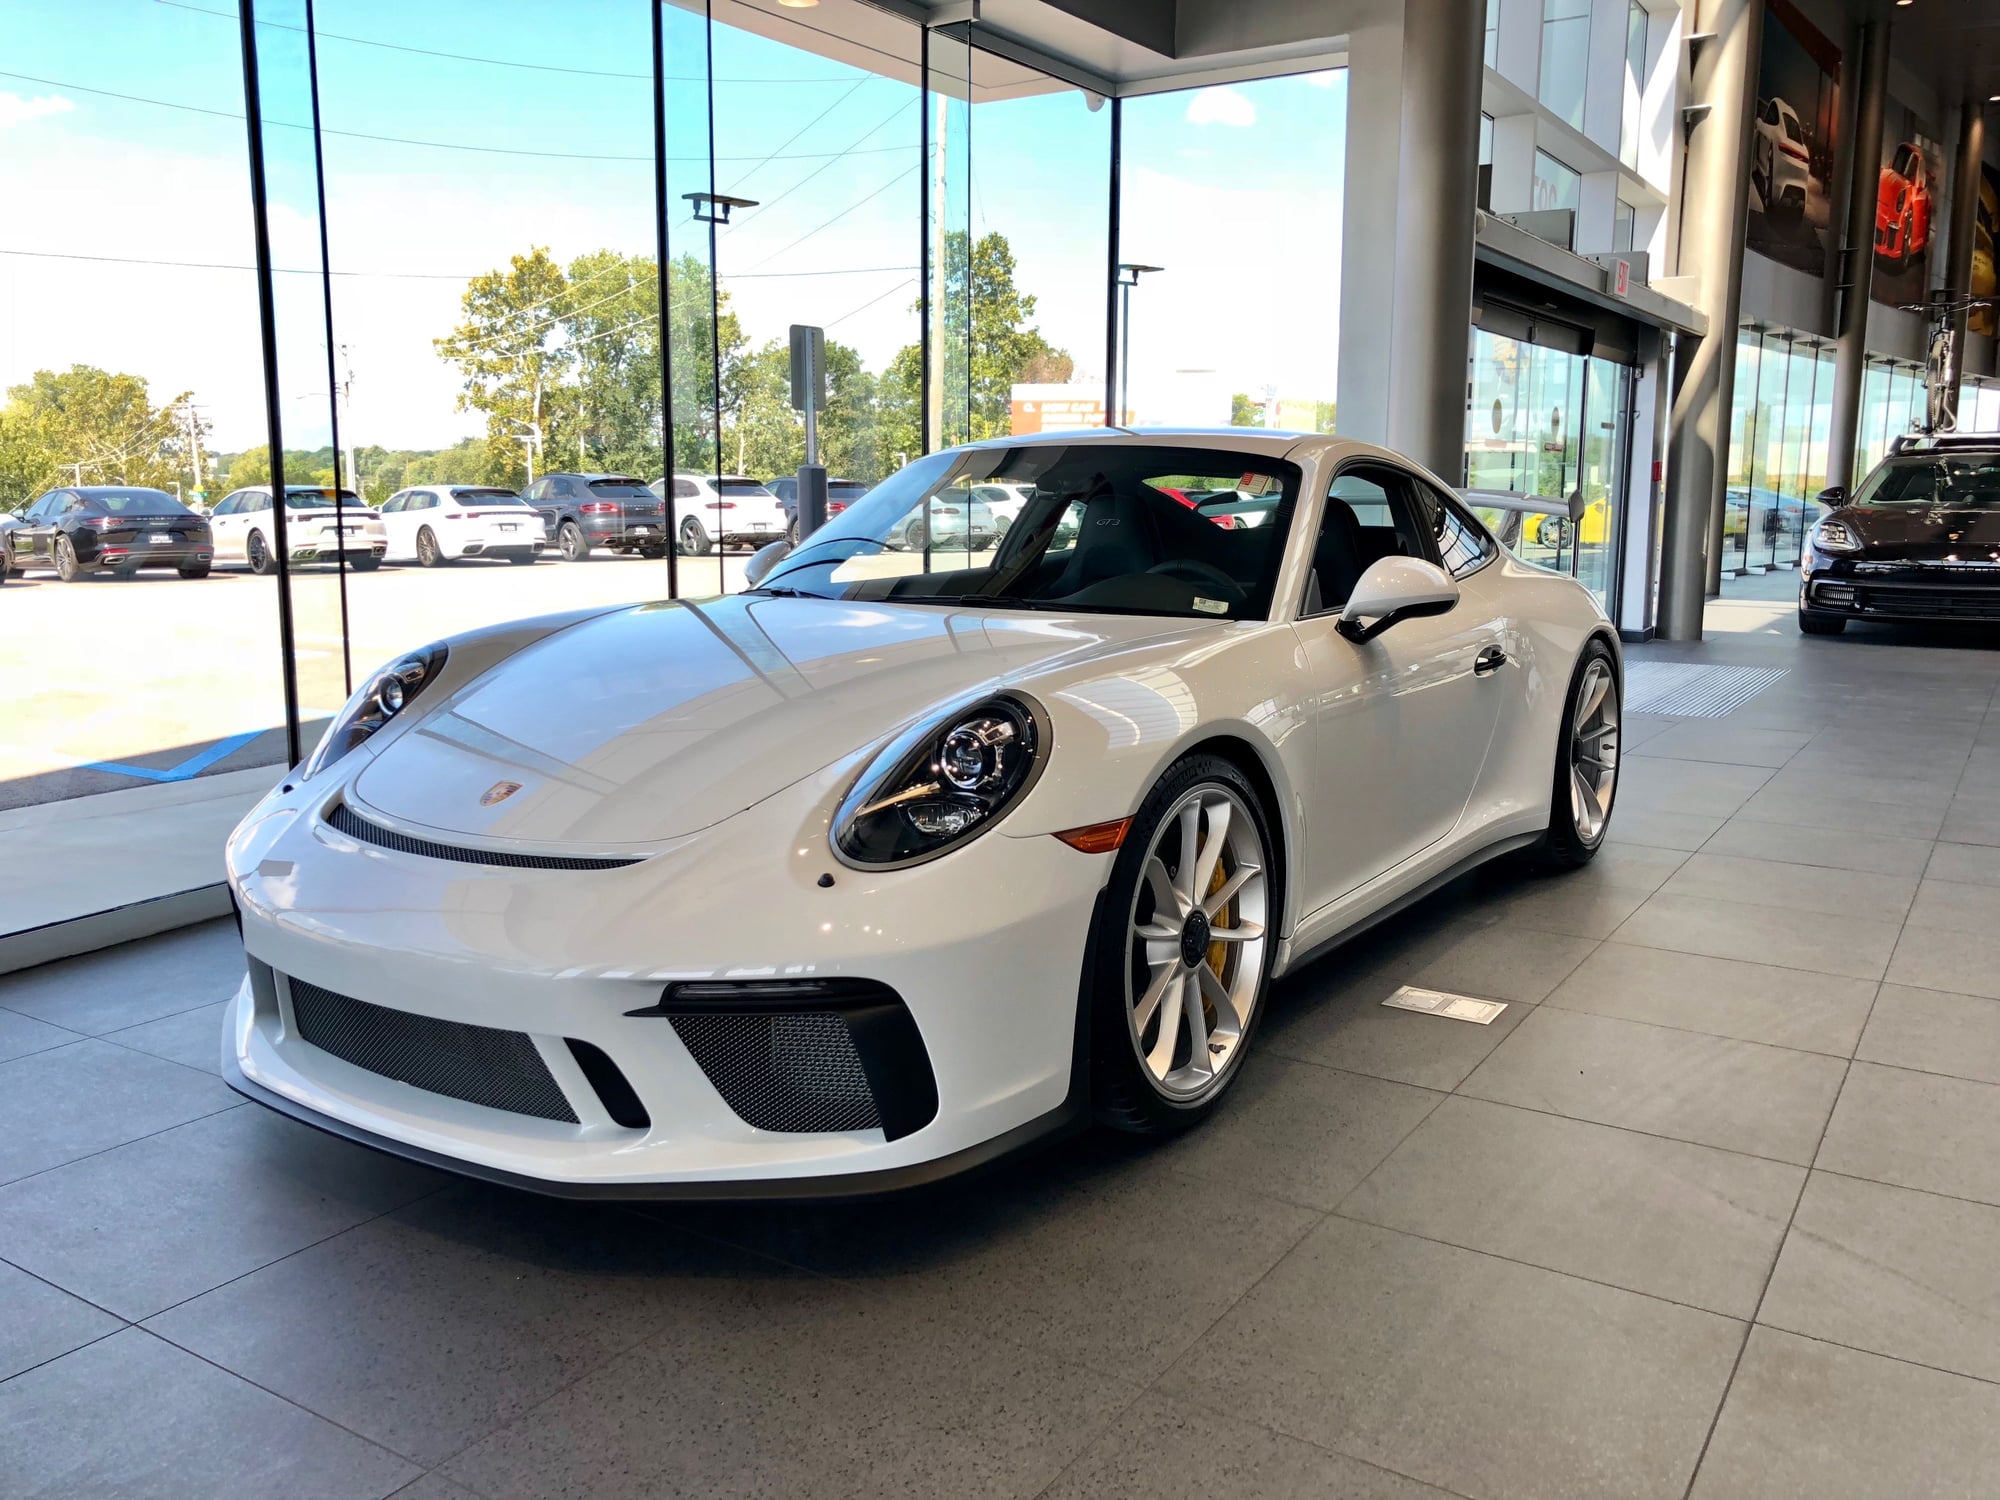 2018 Porsche GT3 - 2018 Porsche 911 GT3 - Used - VIN WP0AC2A971S174545 - 973 Miles - Coral Gables, FL 33146, United States